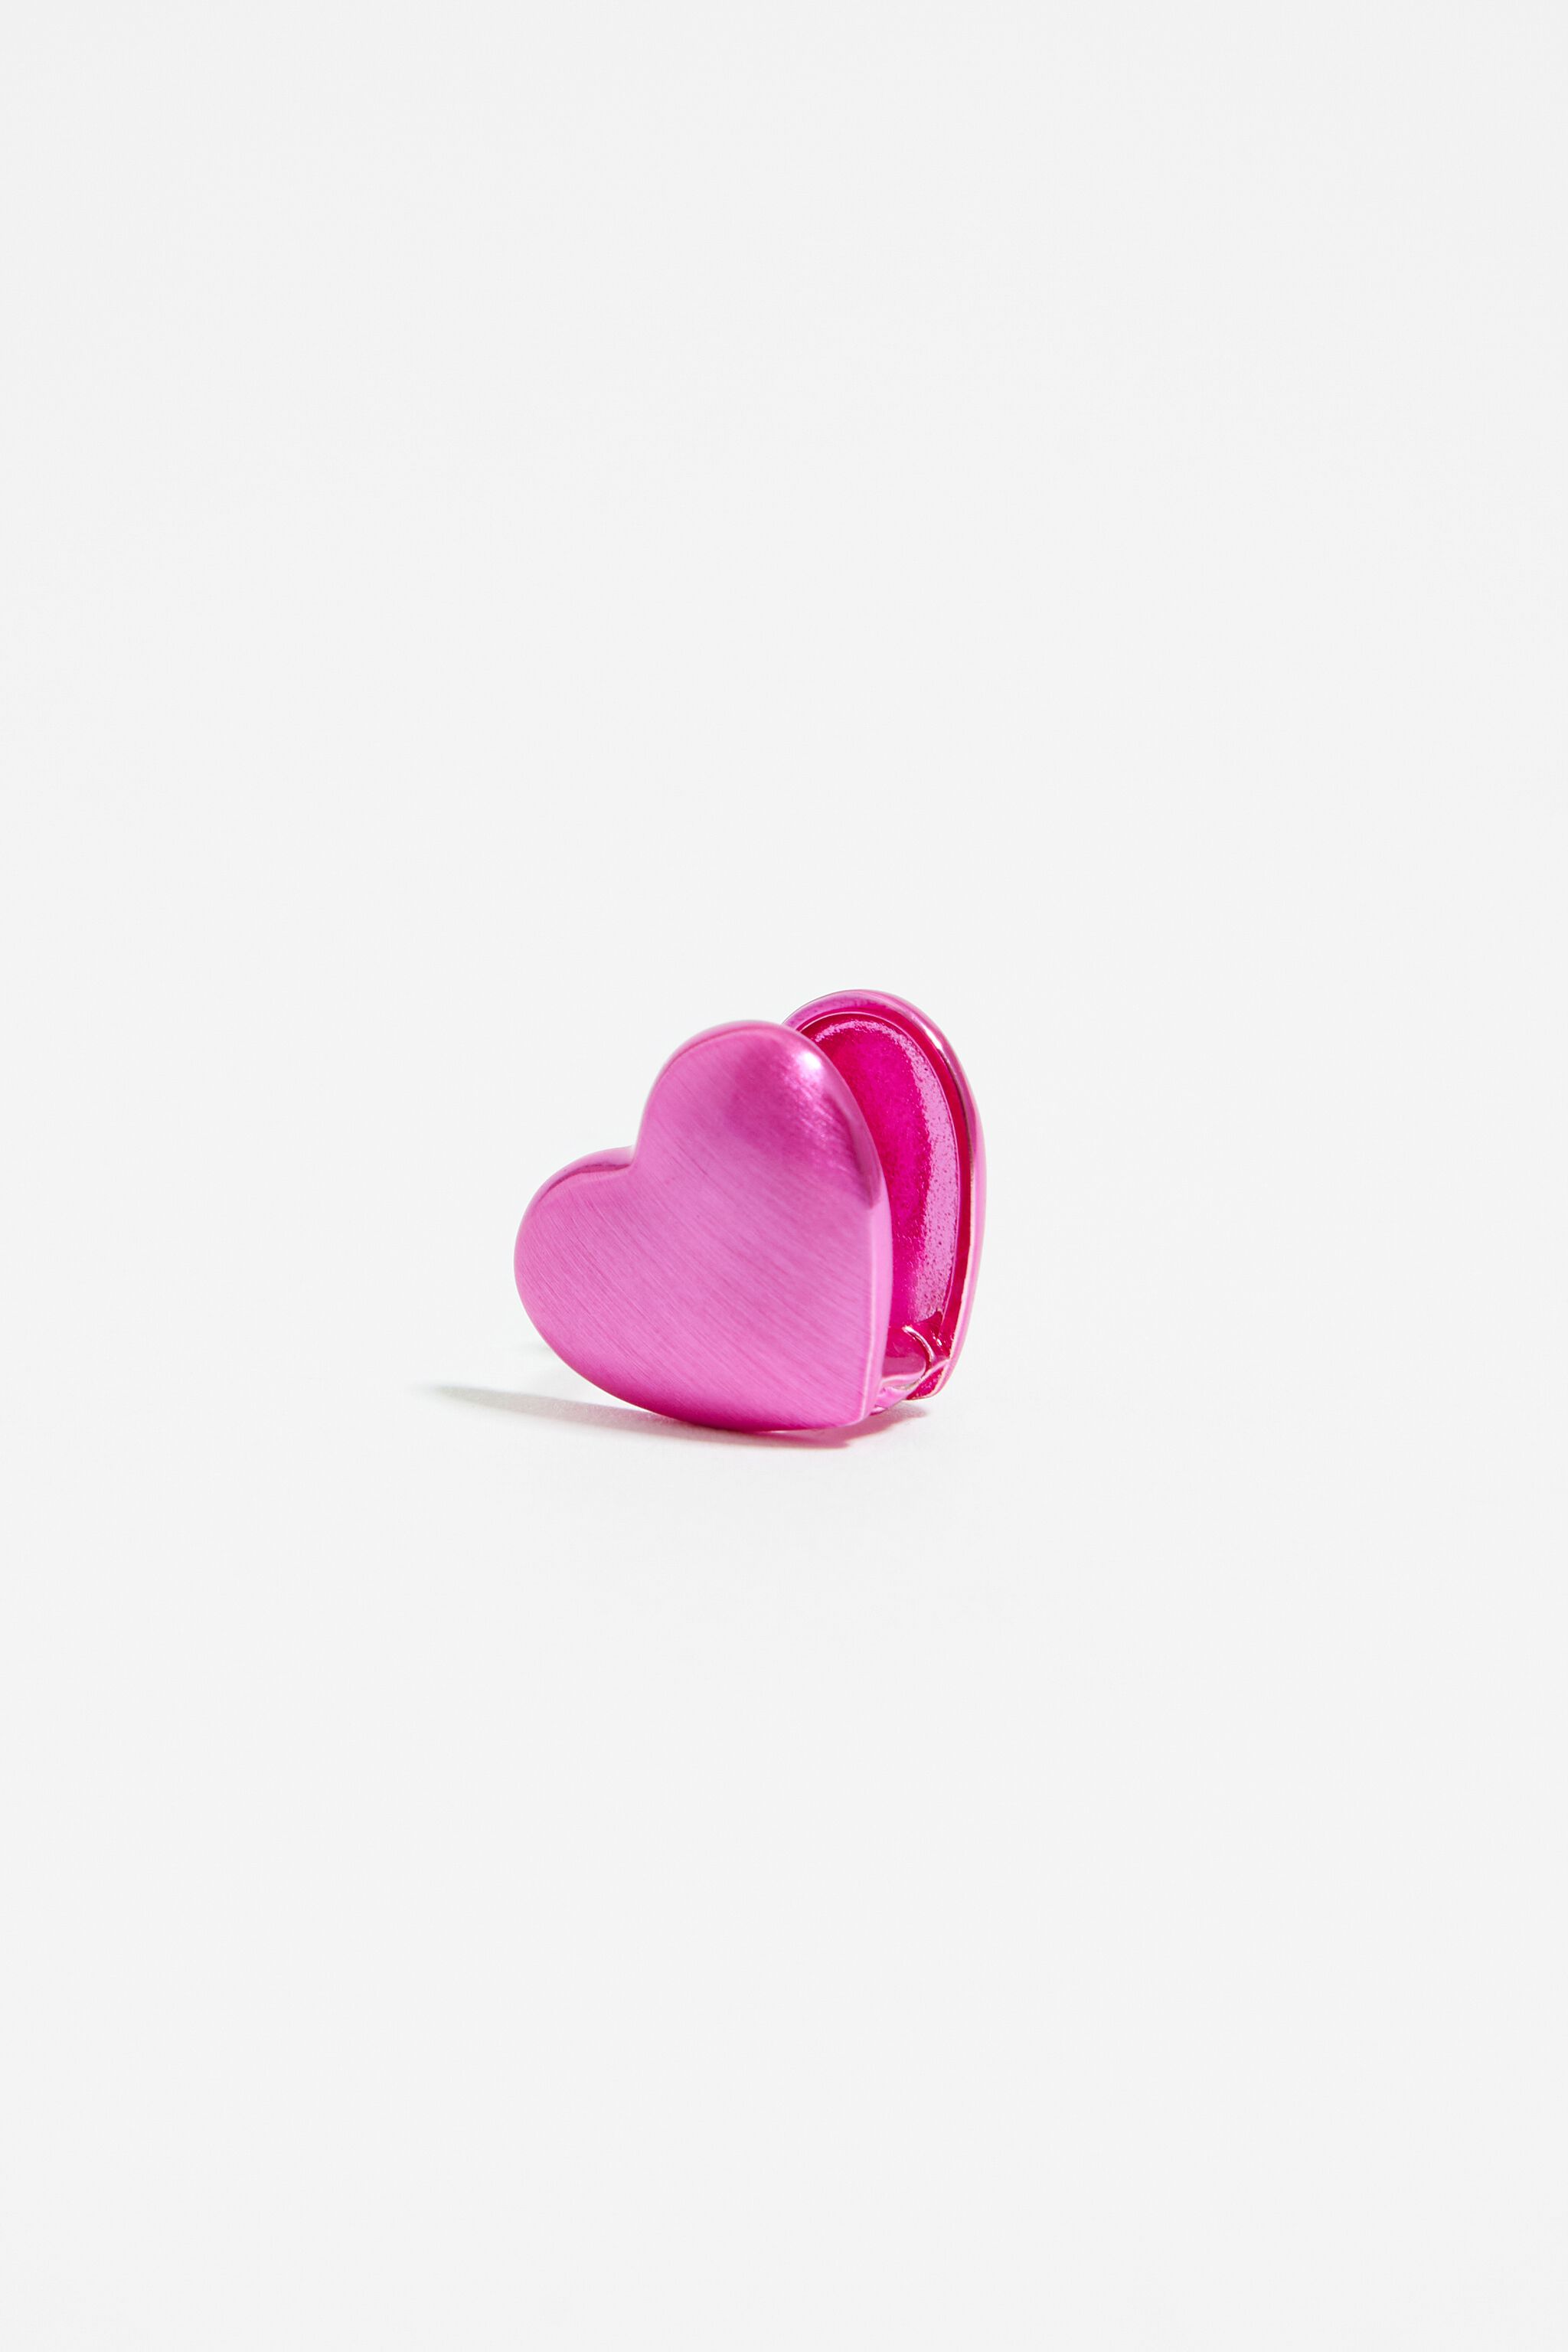 Update 187+ pink heart shaped earrings best